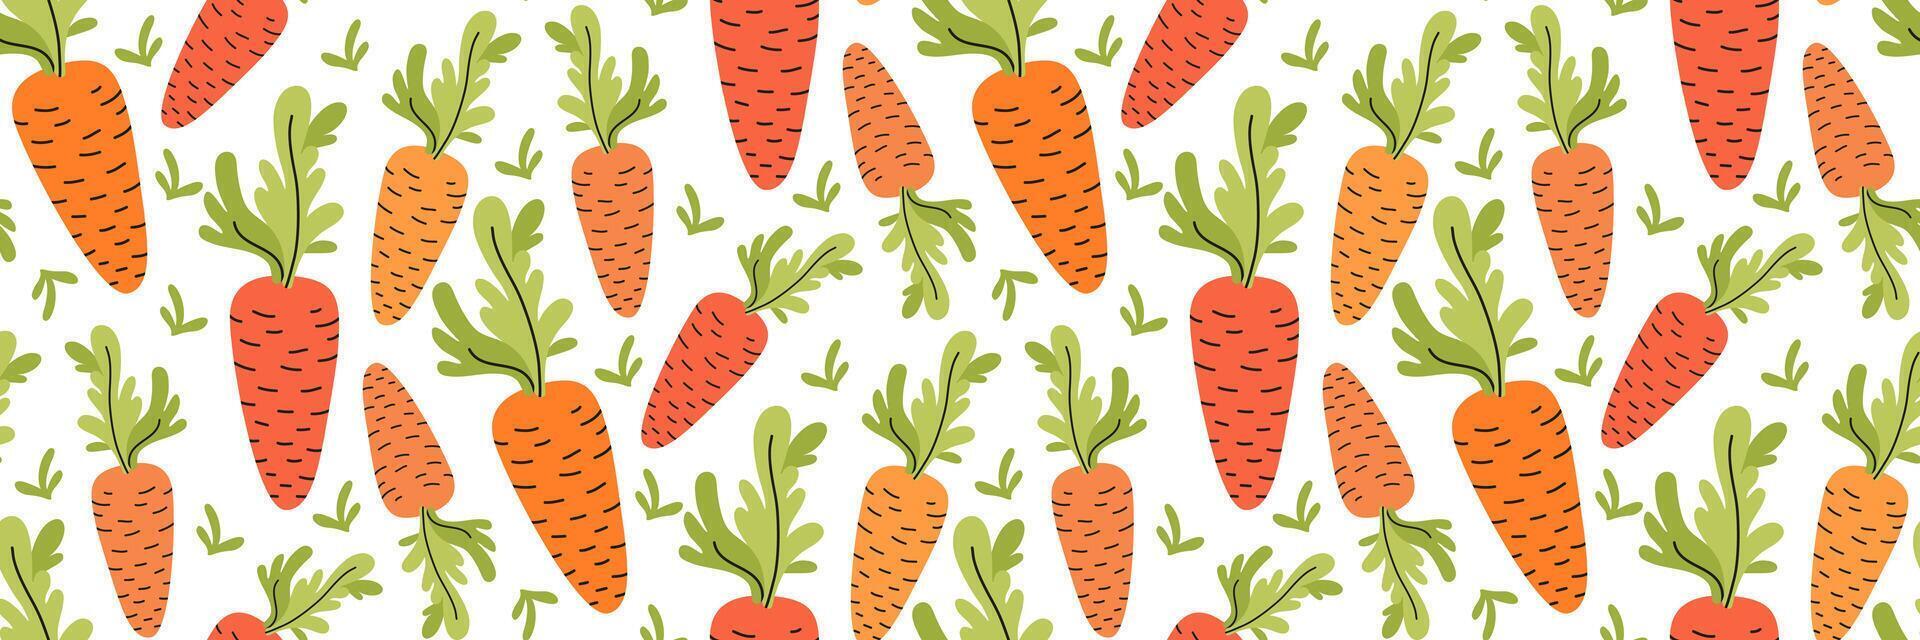 Orange Karotte nahtlos Muster. Hintergrund von nützlich Gemüse zum gesund Diät. Hand gezeichnet Bauernhof Produkte und Getreide. Ernte Festival. Verpackung Papier oder Restaurant Speisekarte. Vektor eben Illustration.